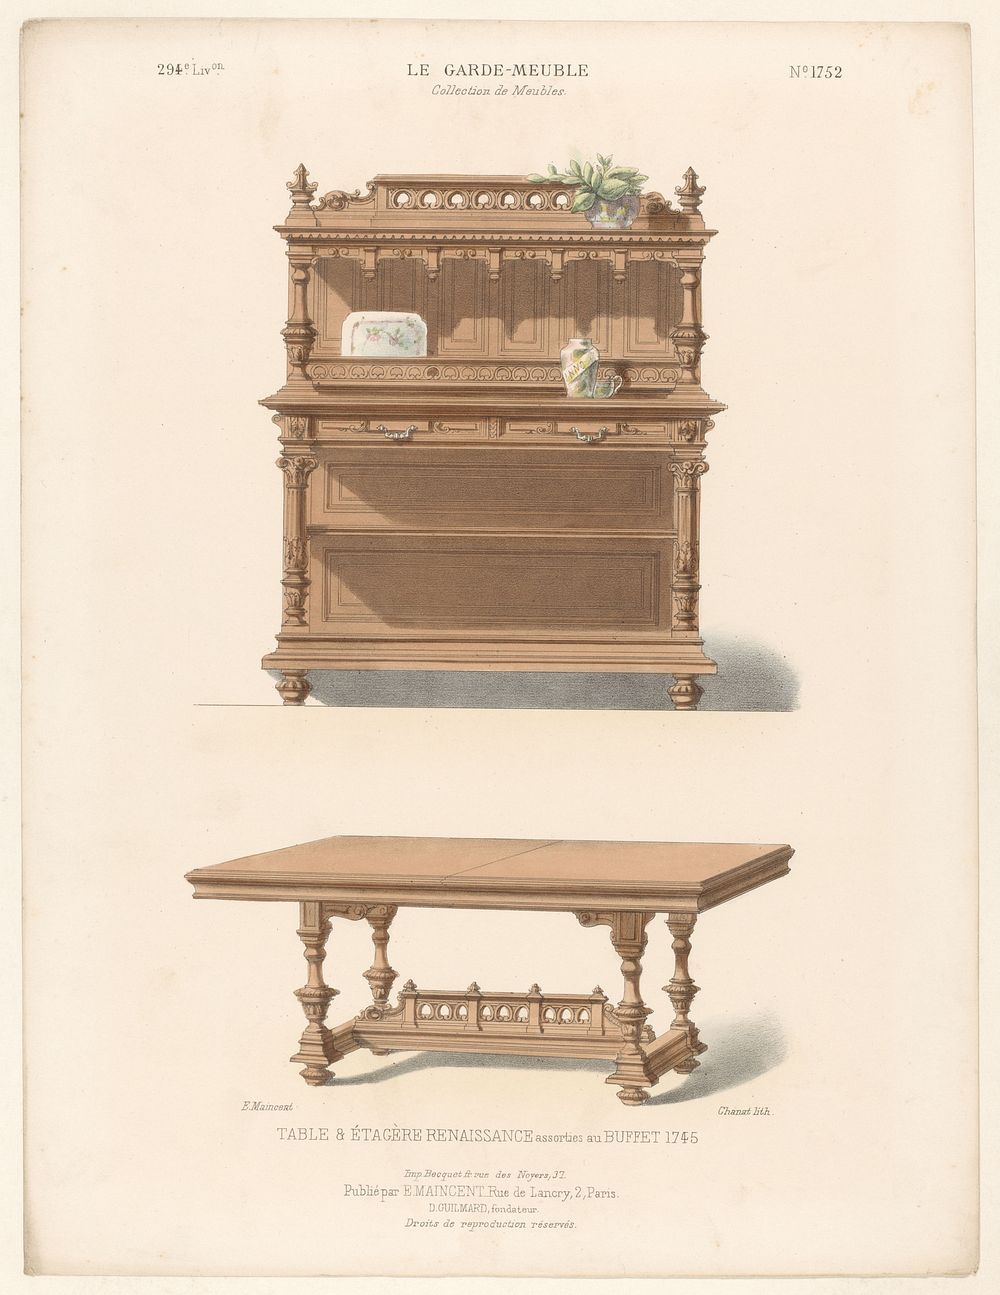 Kast en tafel (1885 - 1895) by Chanat, Becquet frères, Eugène Maincent and Désiré Guilmard